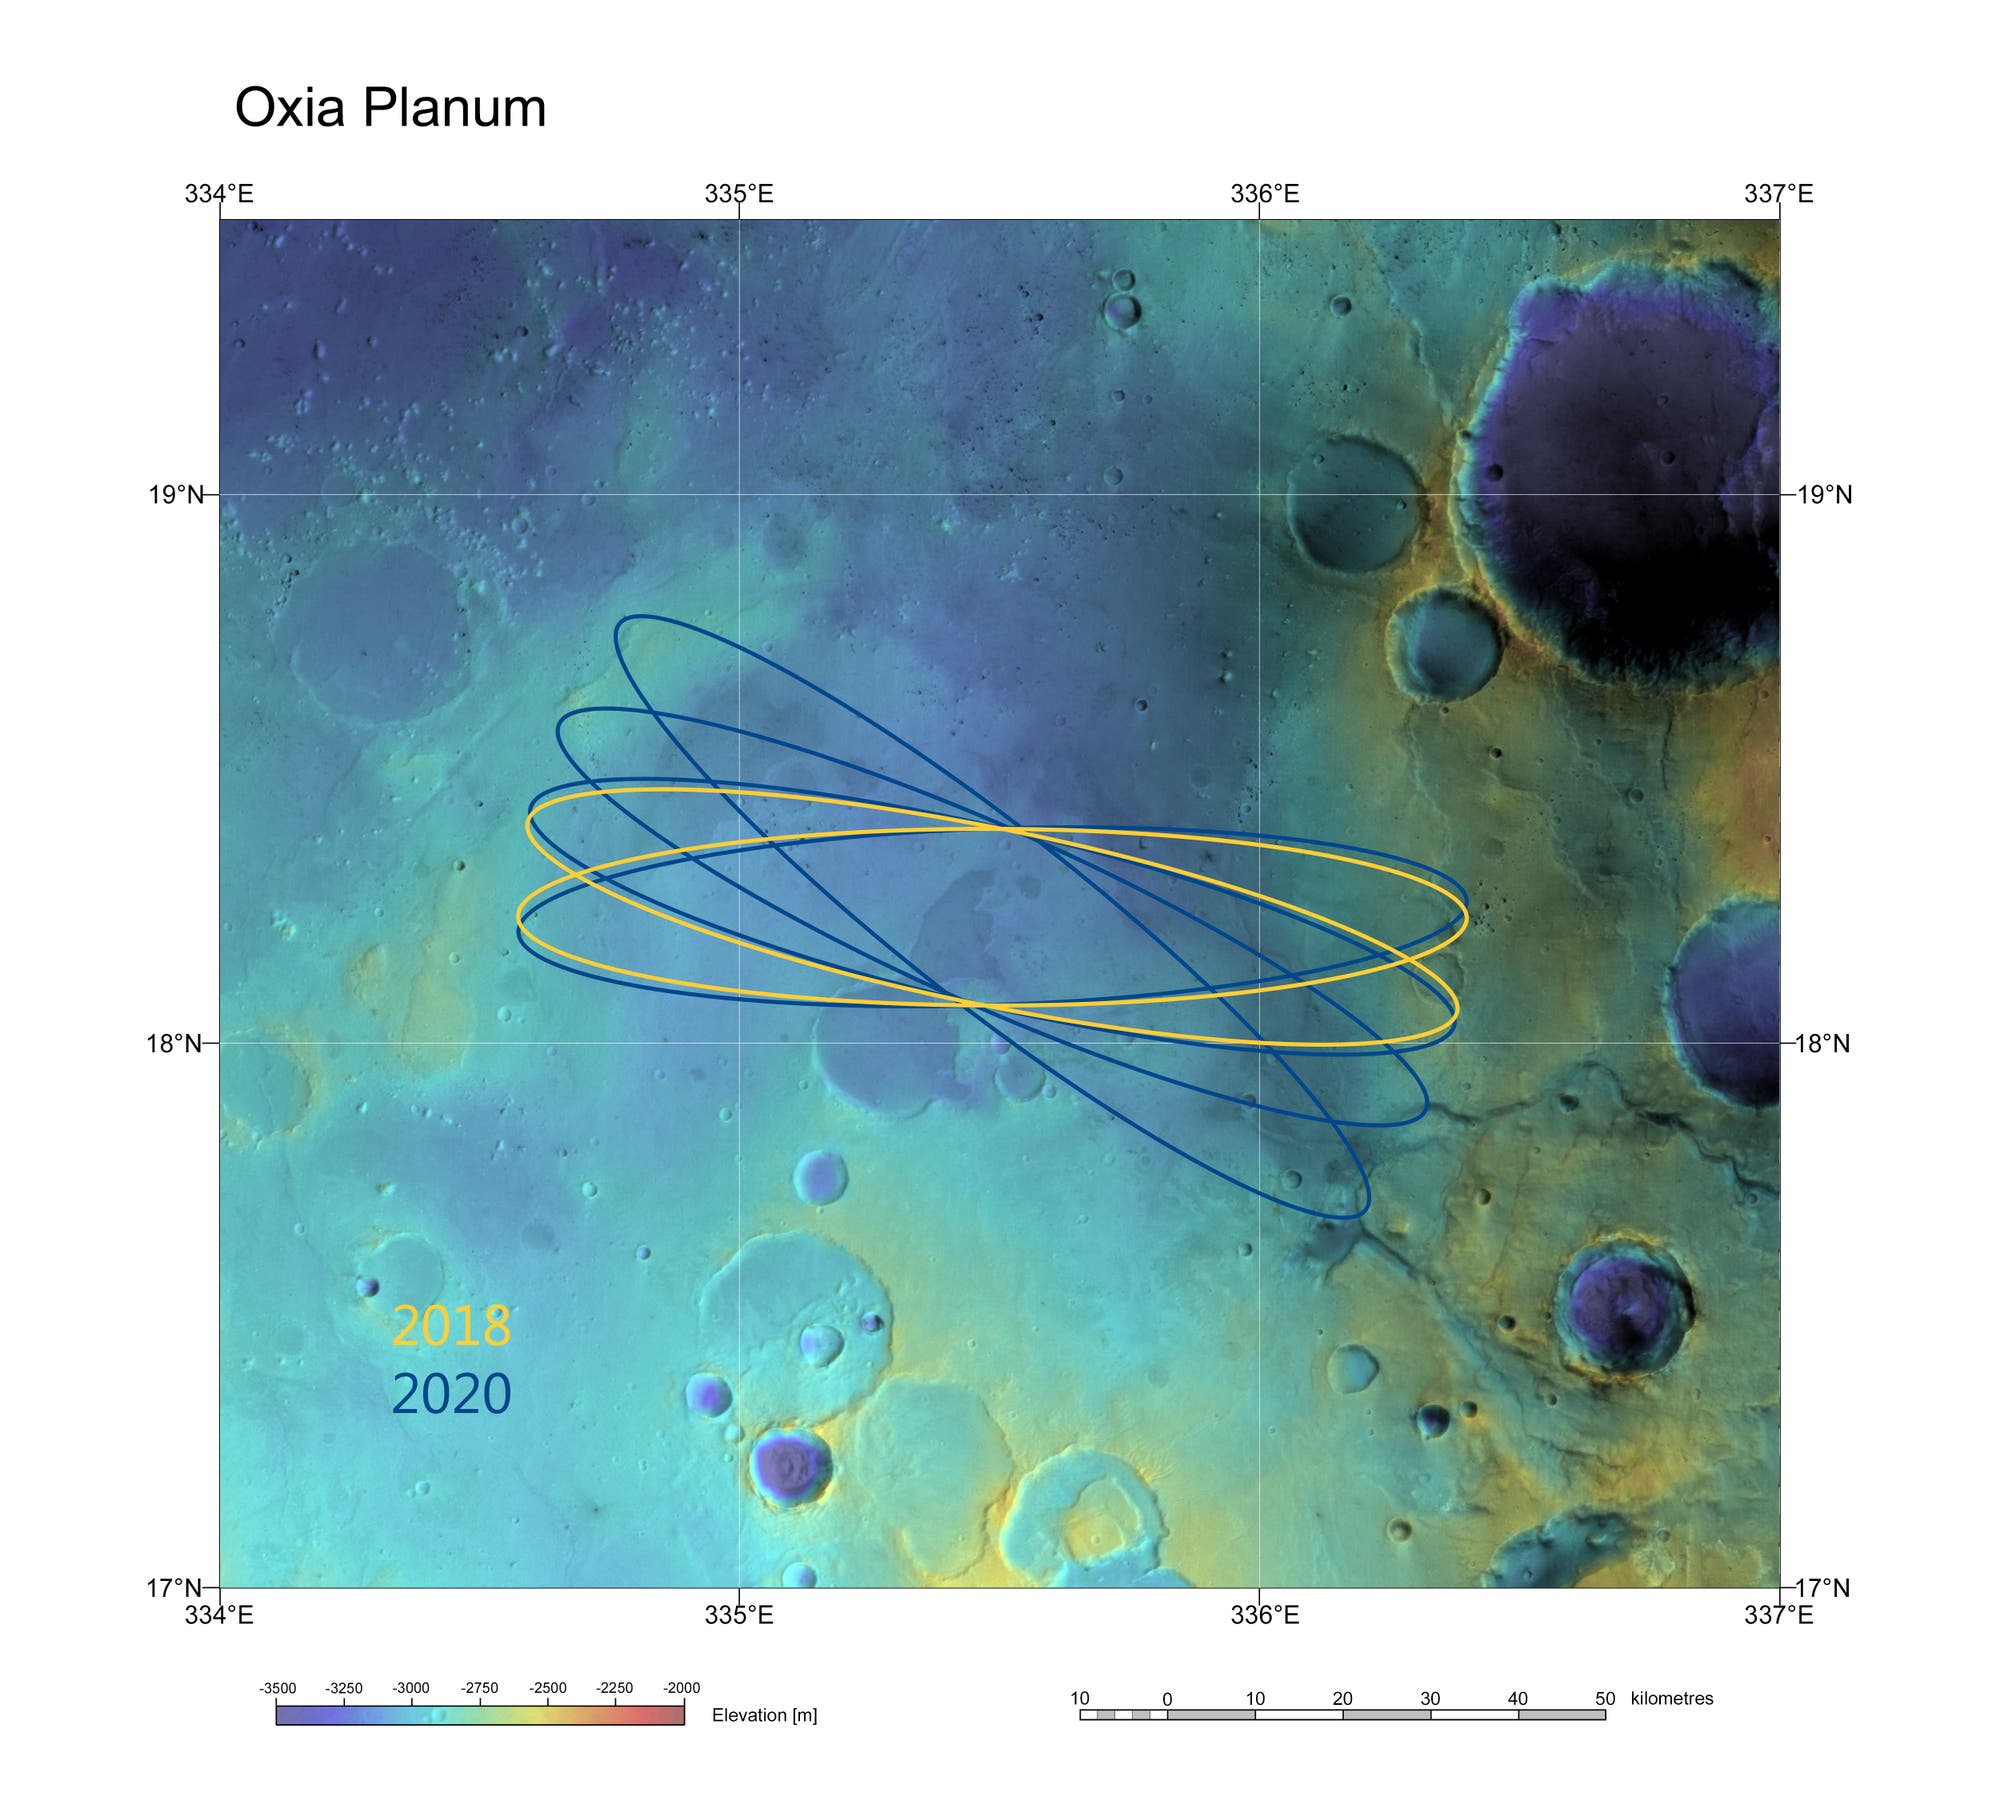 Der Landeplatz Oxia Planum für die Mission ExoMars 2018